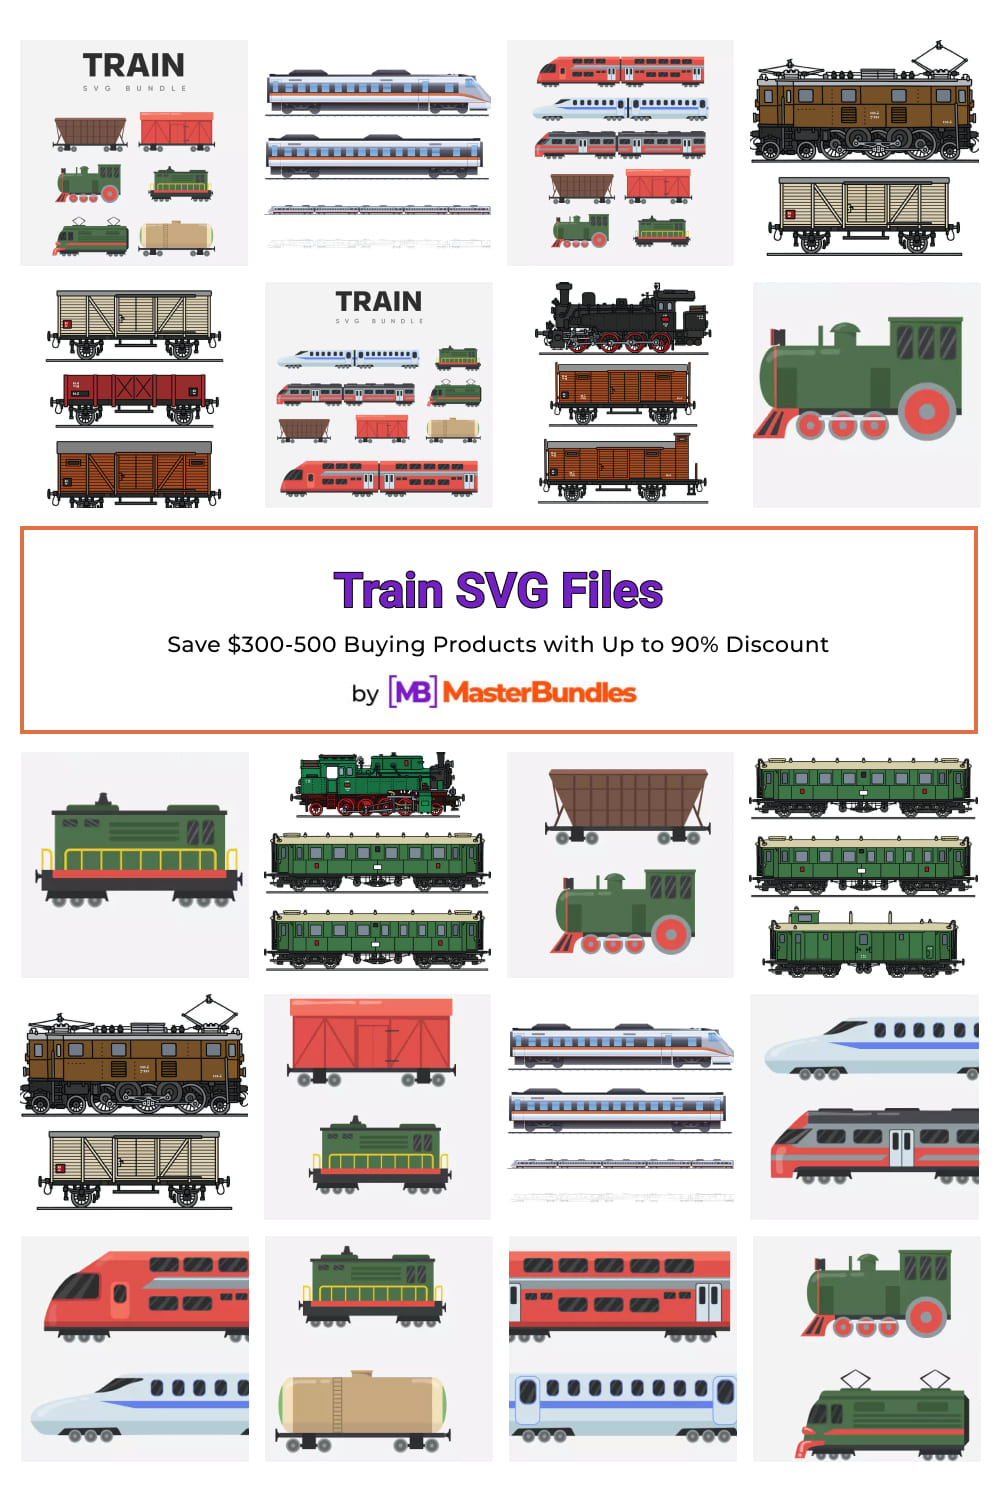 Train SVG Files for pinterest.